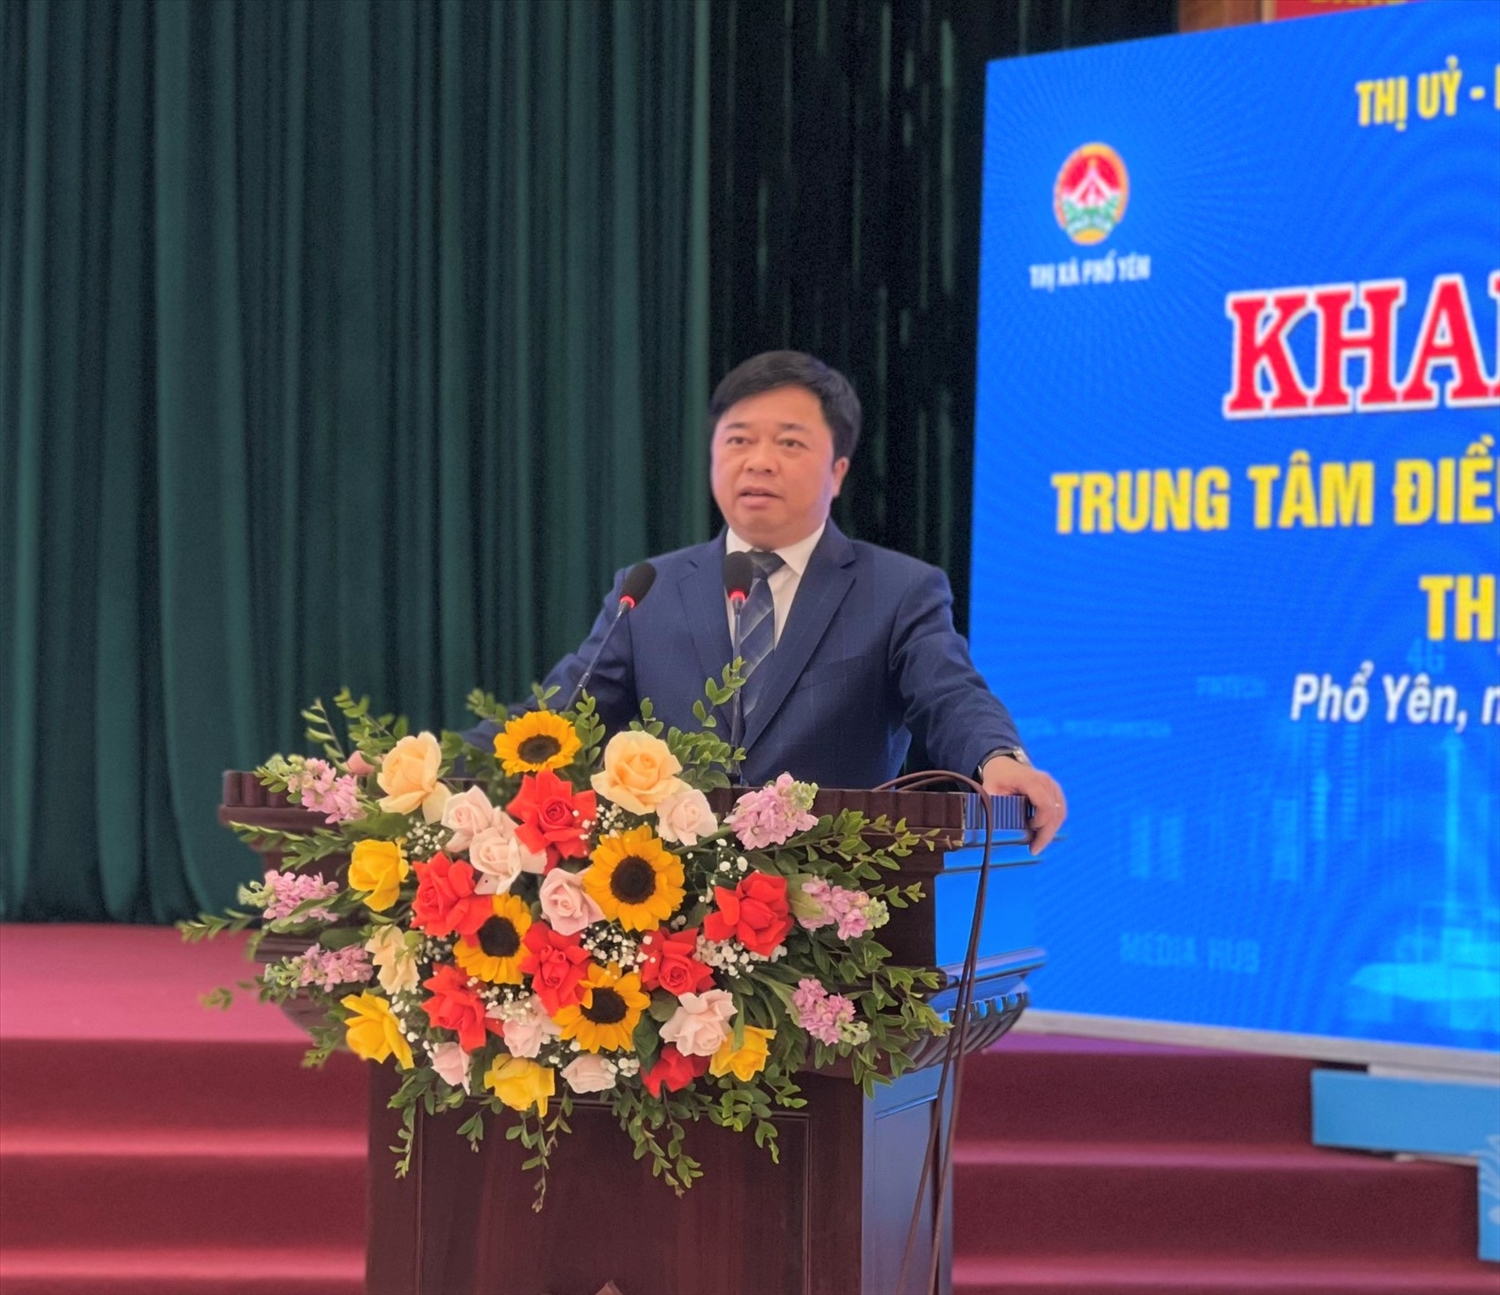 Đồng chí Bùi Văn Lương, Bí thư Thị uỷ - Chủ tịch UBND thị xã Phổ Yên phát biểu tại Lễ khai trương